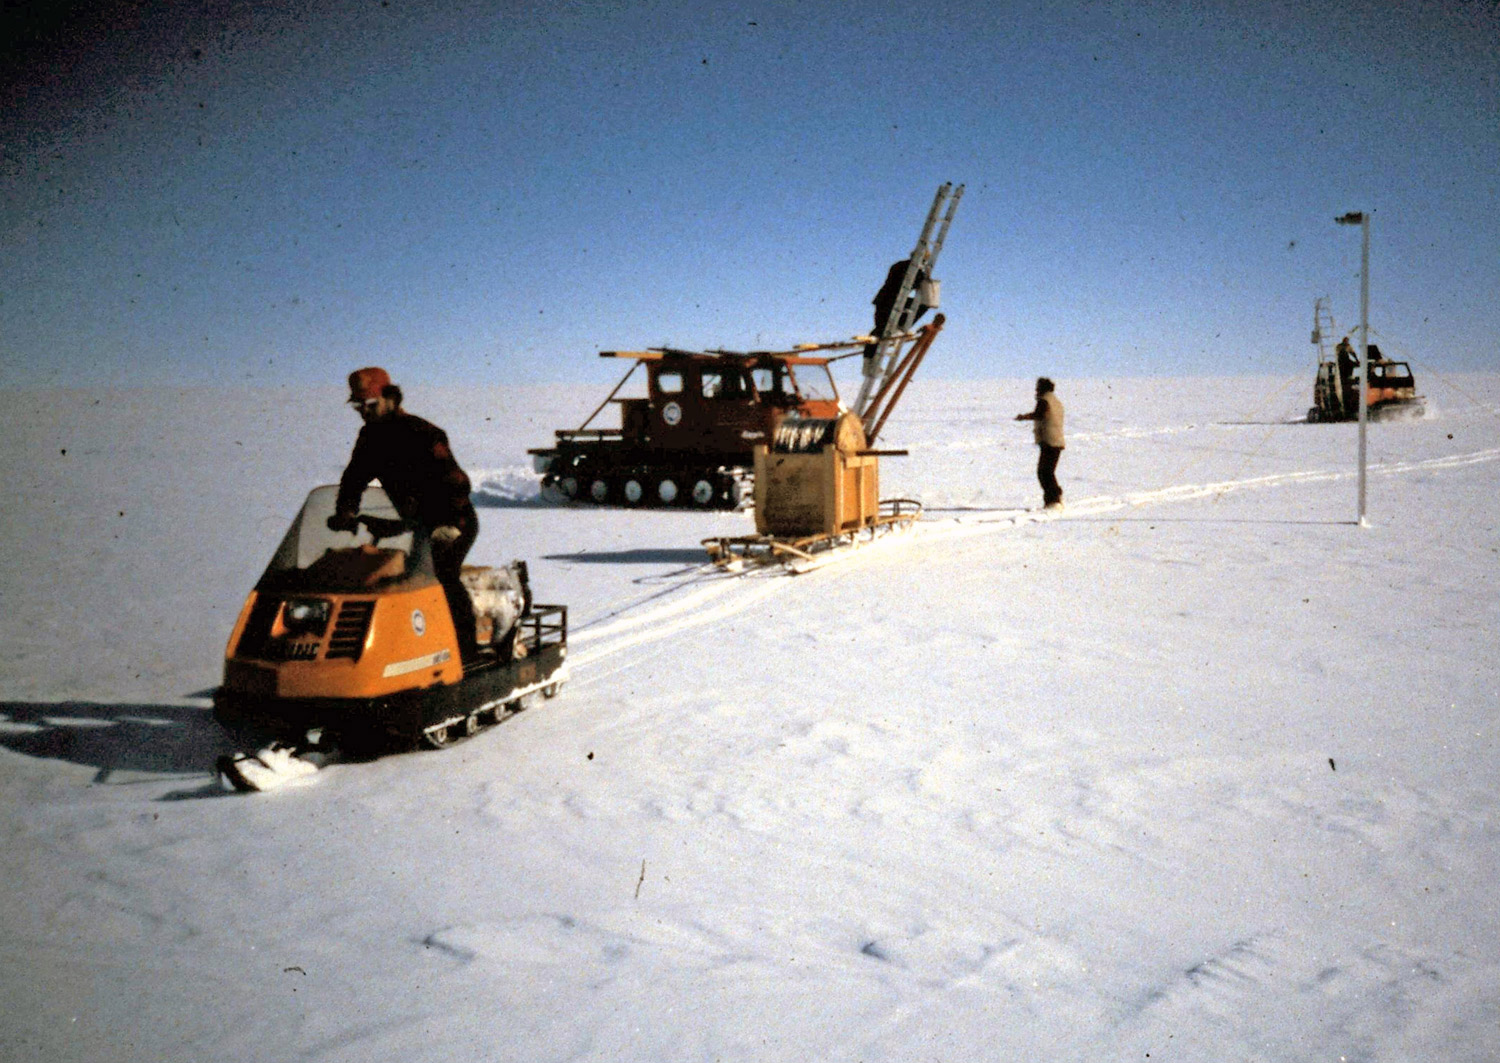 Vehicles in Antarctica